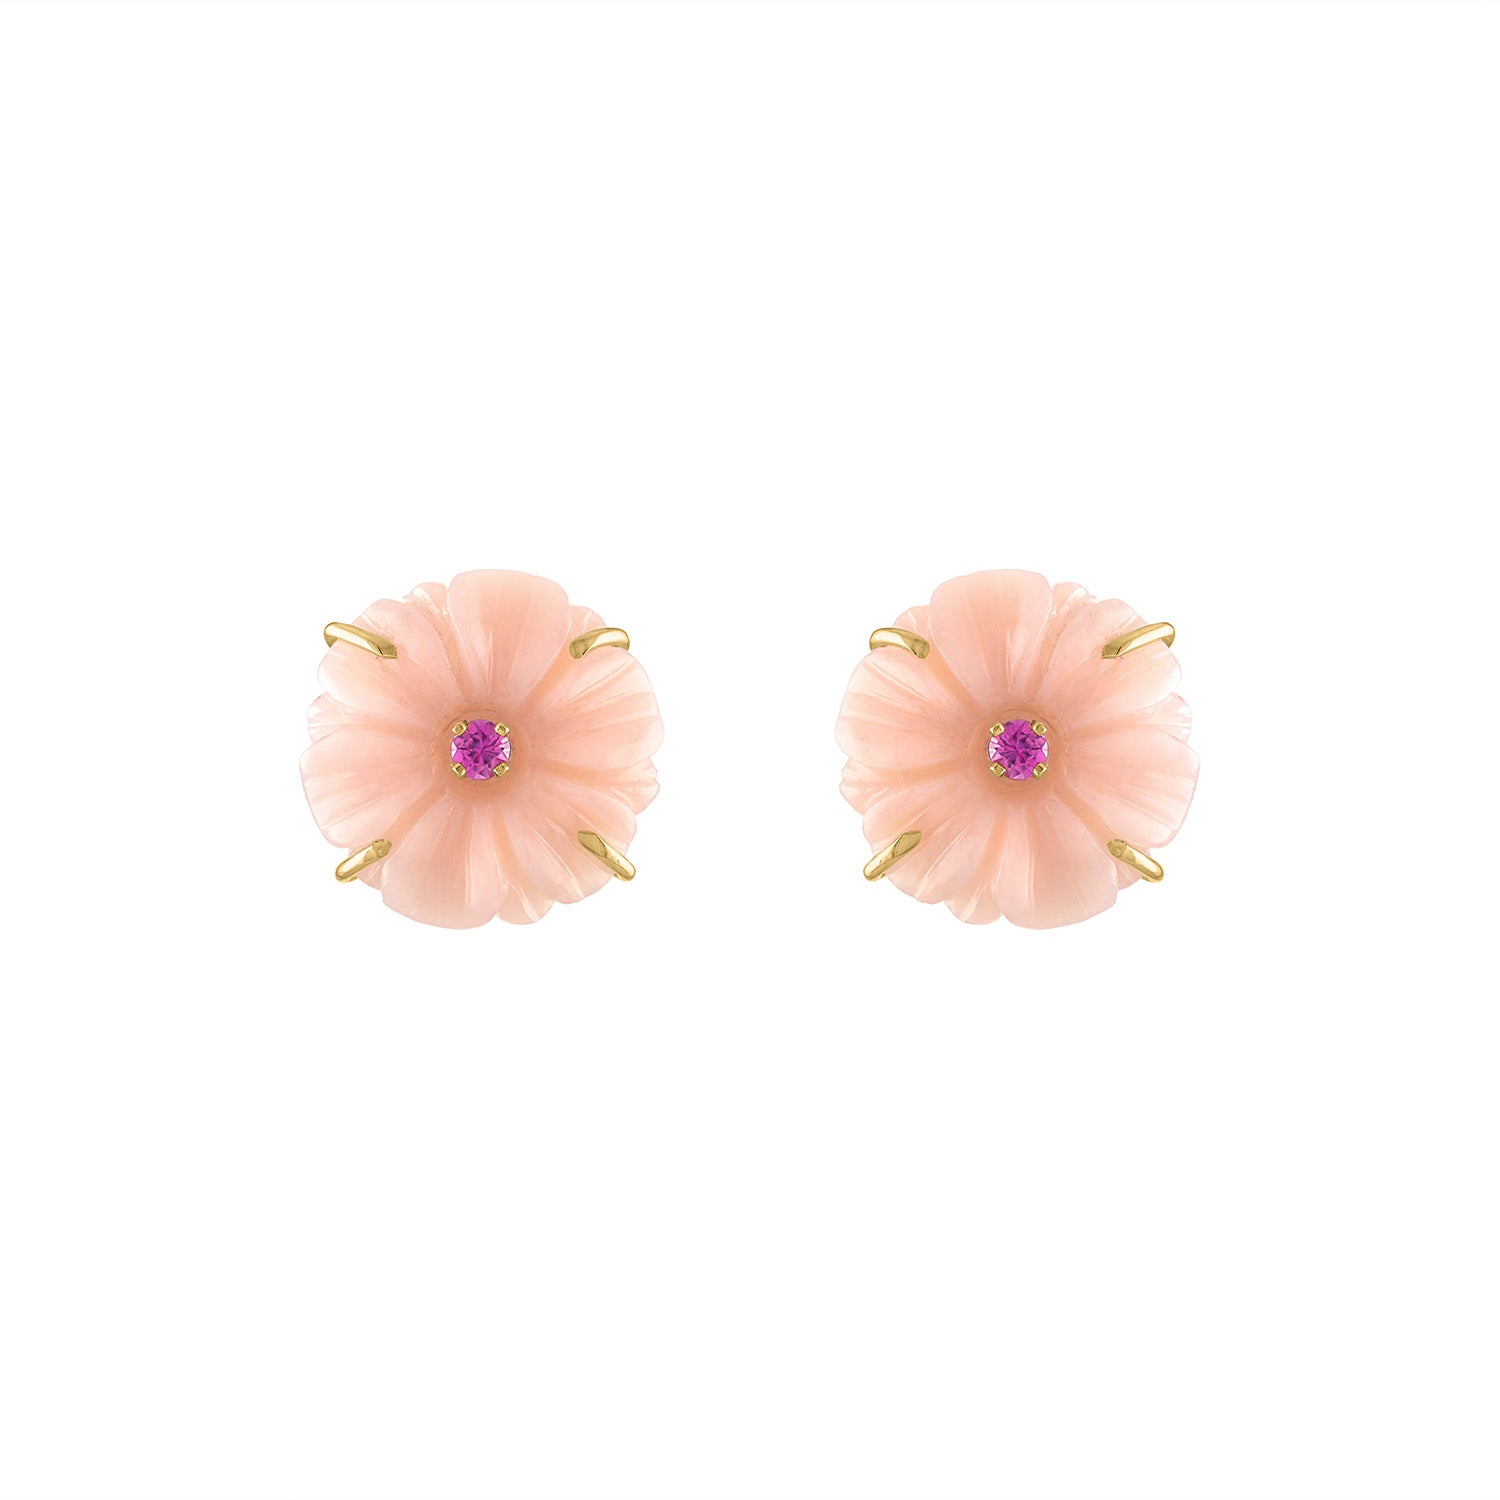 SALE: Pink Opal Flower Studs